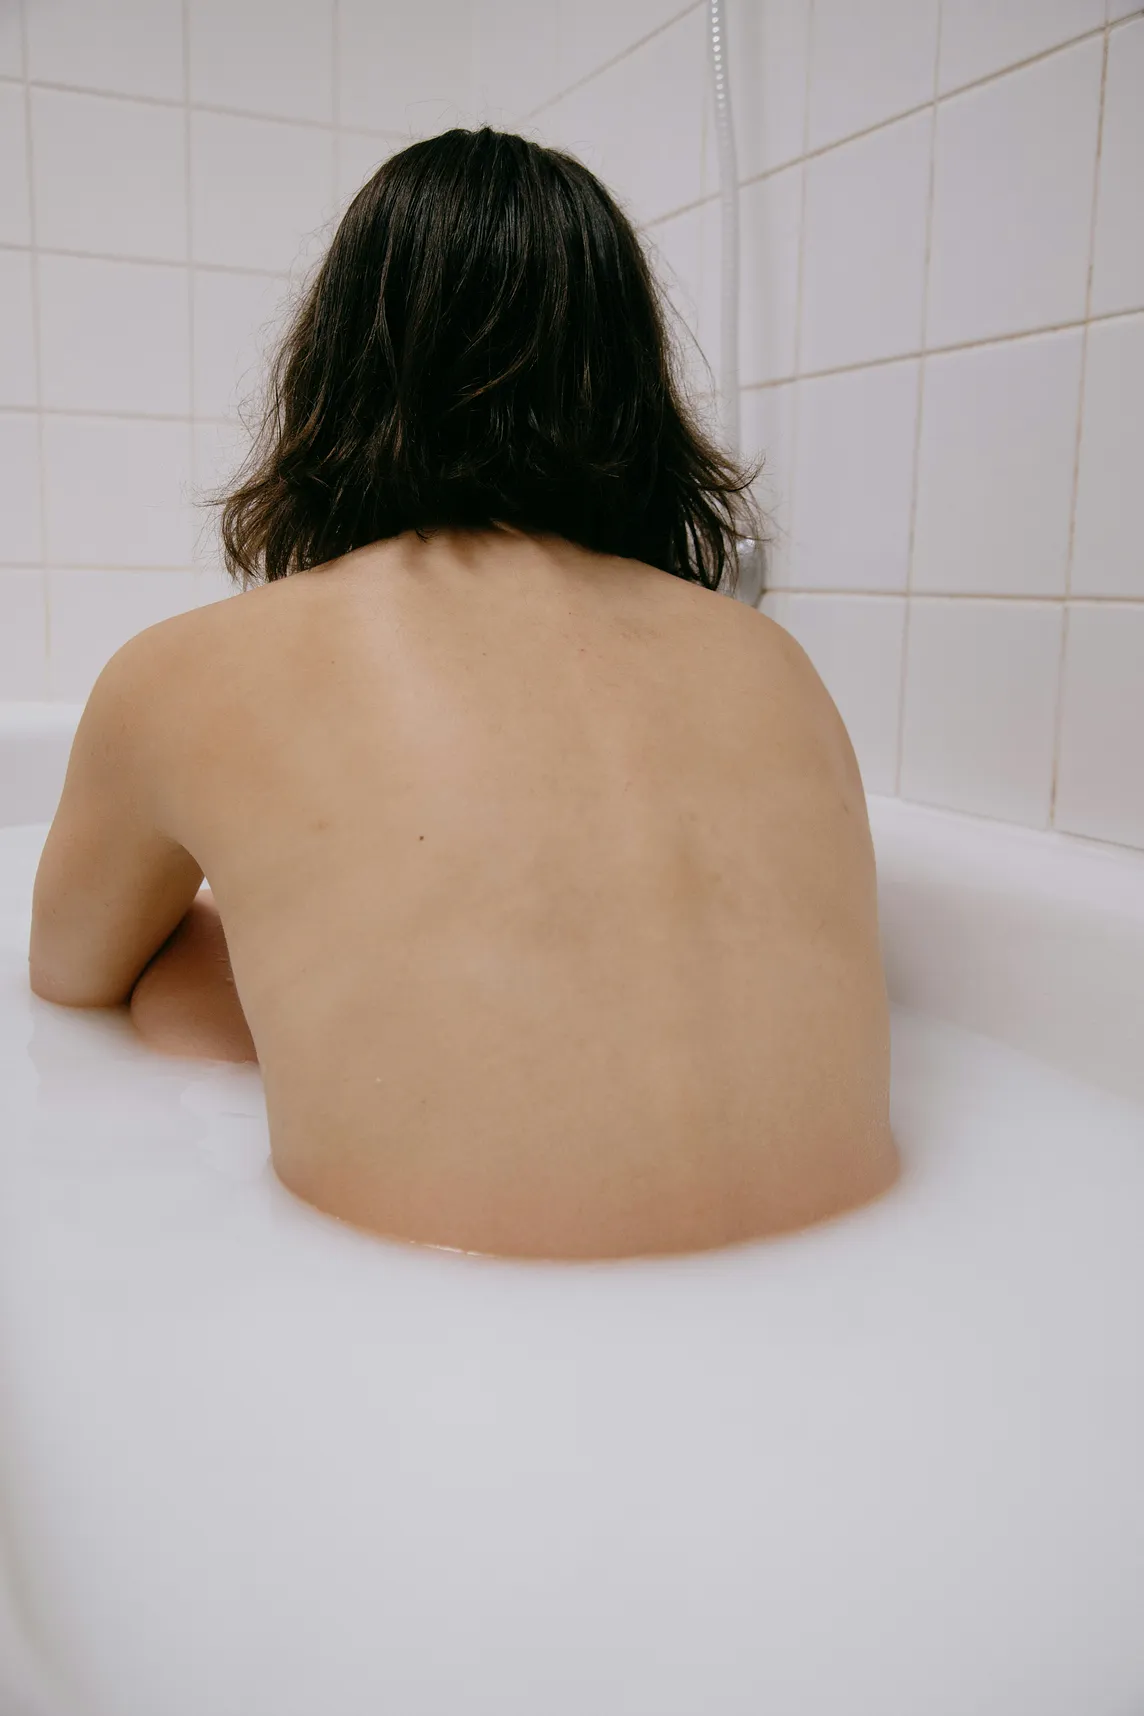 A woman sitting in a bathtub